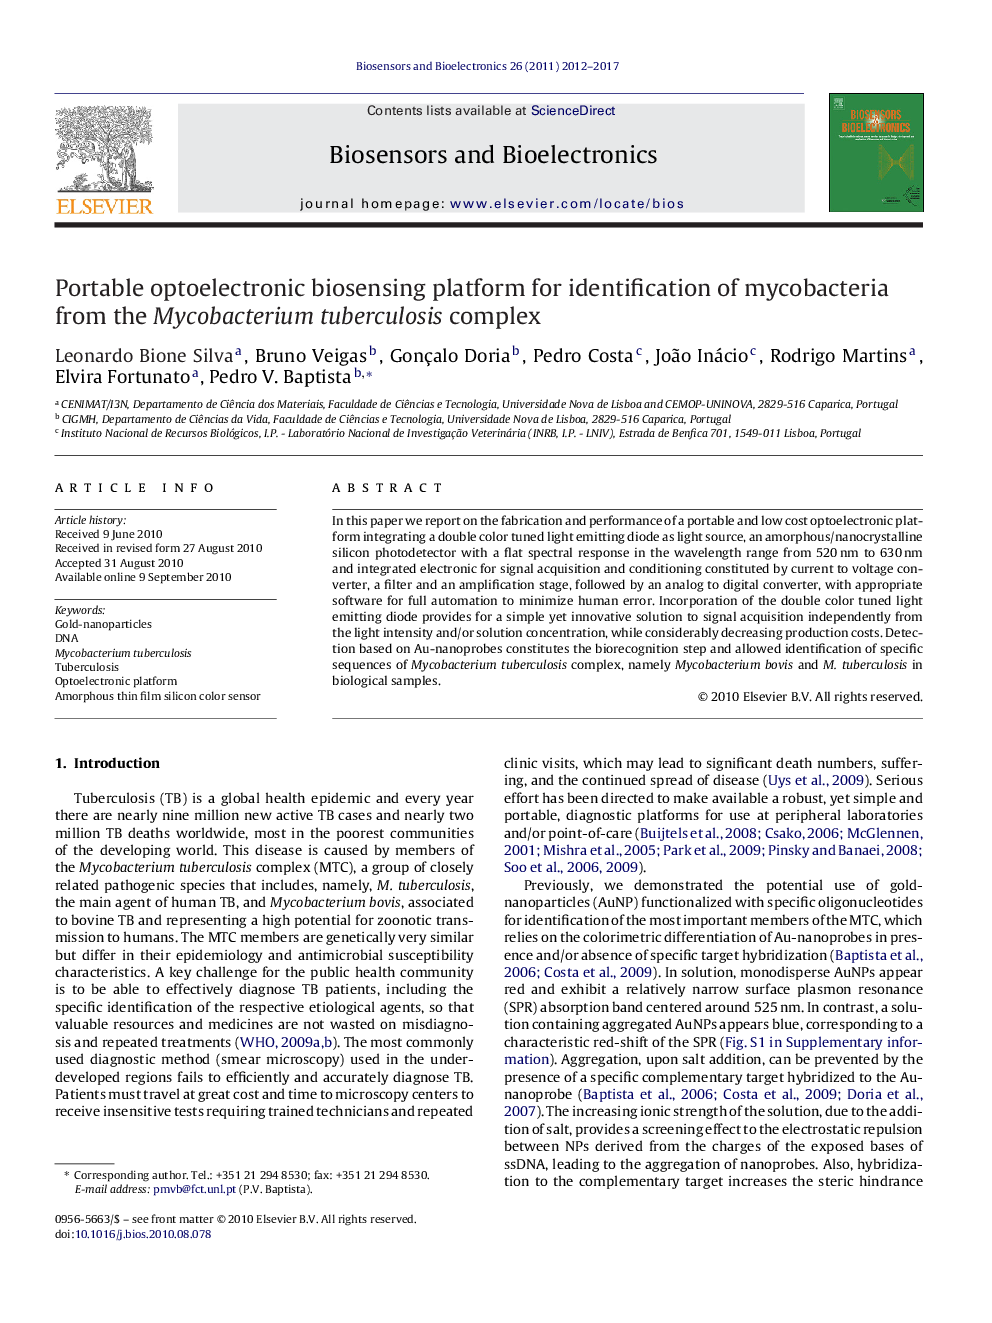 پلت فرم حسگر زیستی اپتوالکترونیکی قابل حمل برای شناسایی مایکوباکتریوم از کمپلکس مایکوباکتریوم توبرکلوزیس